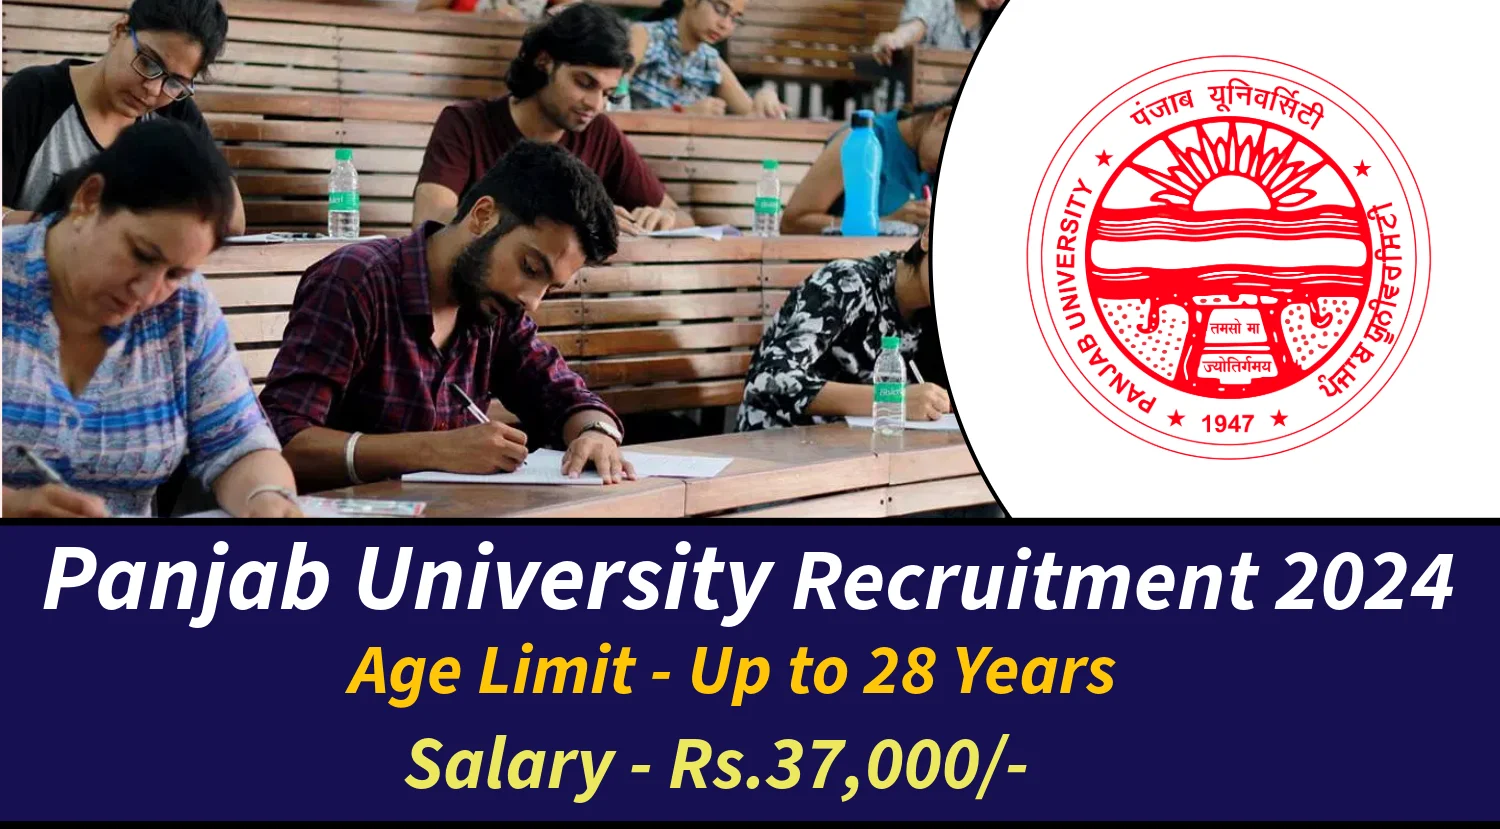 Panjab University Recruitment 2024 Notification Out